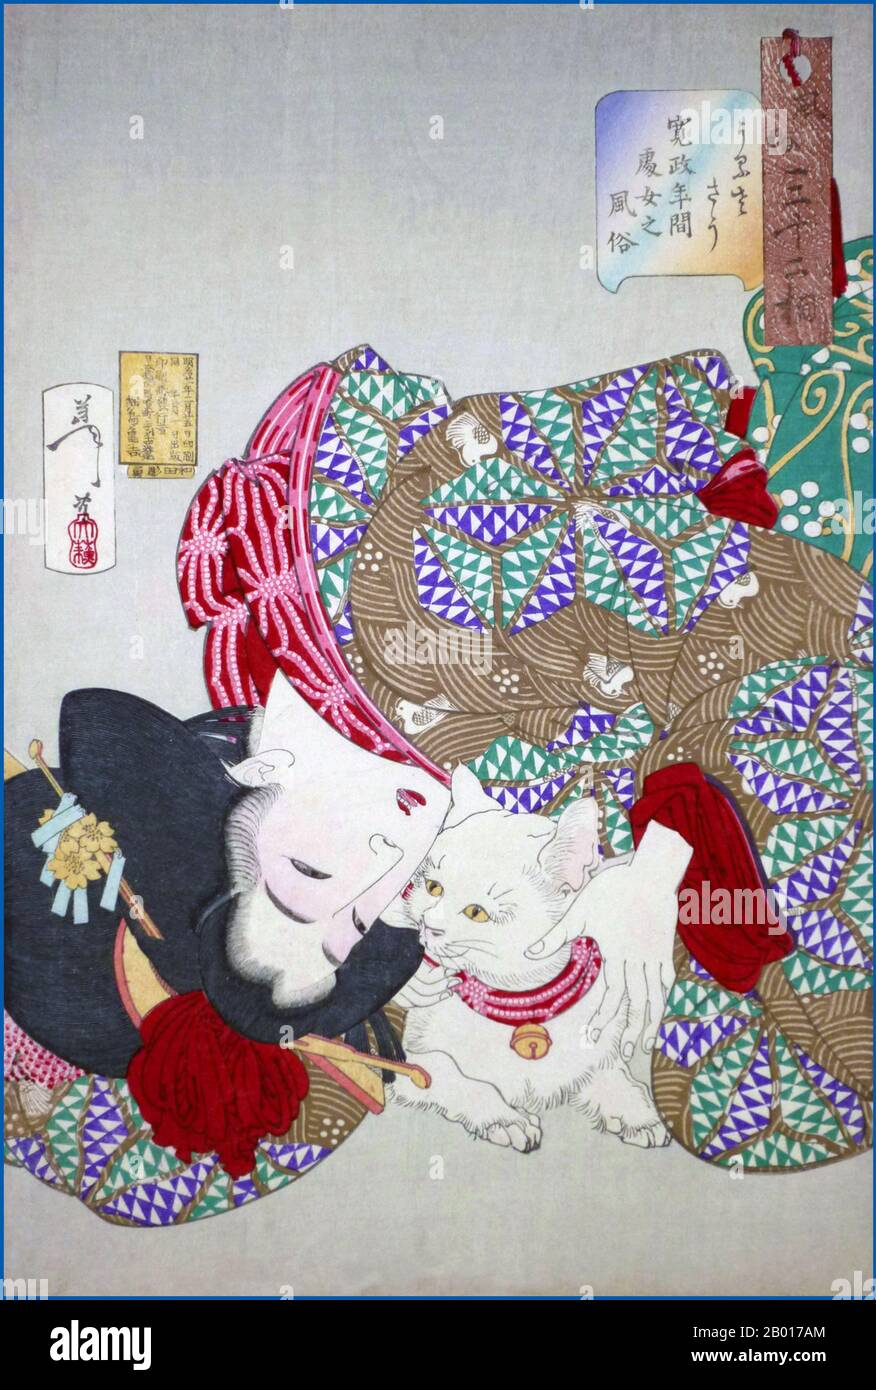 Giappone: 'Guardare il gatto noioso / teasing il gatto'. Ukiyo-e woodblock print by Tsukioka Yoshitoshi (30 aprile 1839 - 9 giugno 1892), 1888. Tsukioka Yoshitoshi, anche chiamato Taiso Yoshitoshi, era un artista giapponese. È ampiamente riconosciuto come l'ultimo grande maestro di Ukiyo-e, un tipo di stampa giapponese a blocchi di legno. È inoltre considerato uno dei più grandi innovatori della forma. La sua carriera ha abbracciato due epoche – gli ultimi anni del Giappone feudale, e i primi anni del Giappone moderno dopo la Restaurazione Meiji. Foto Stock